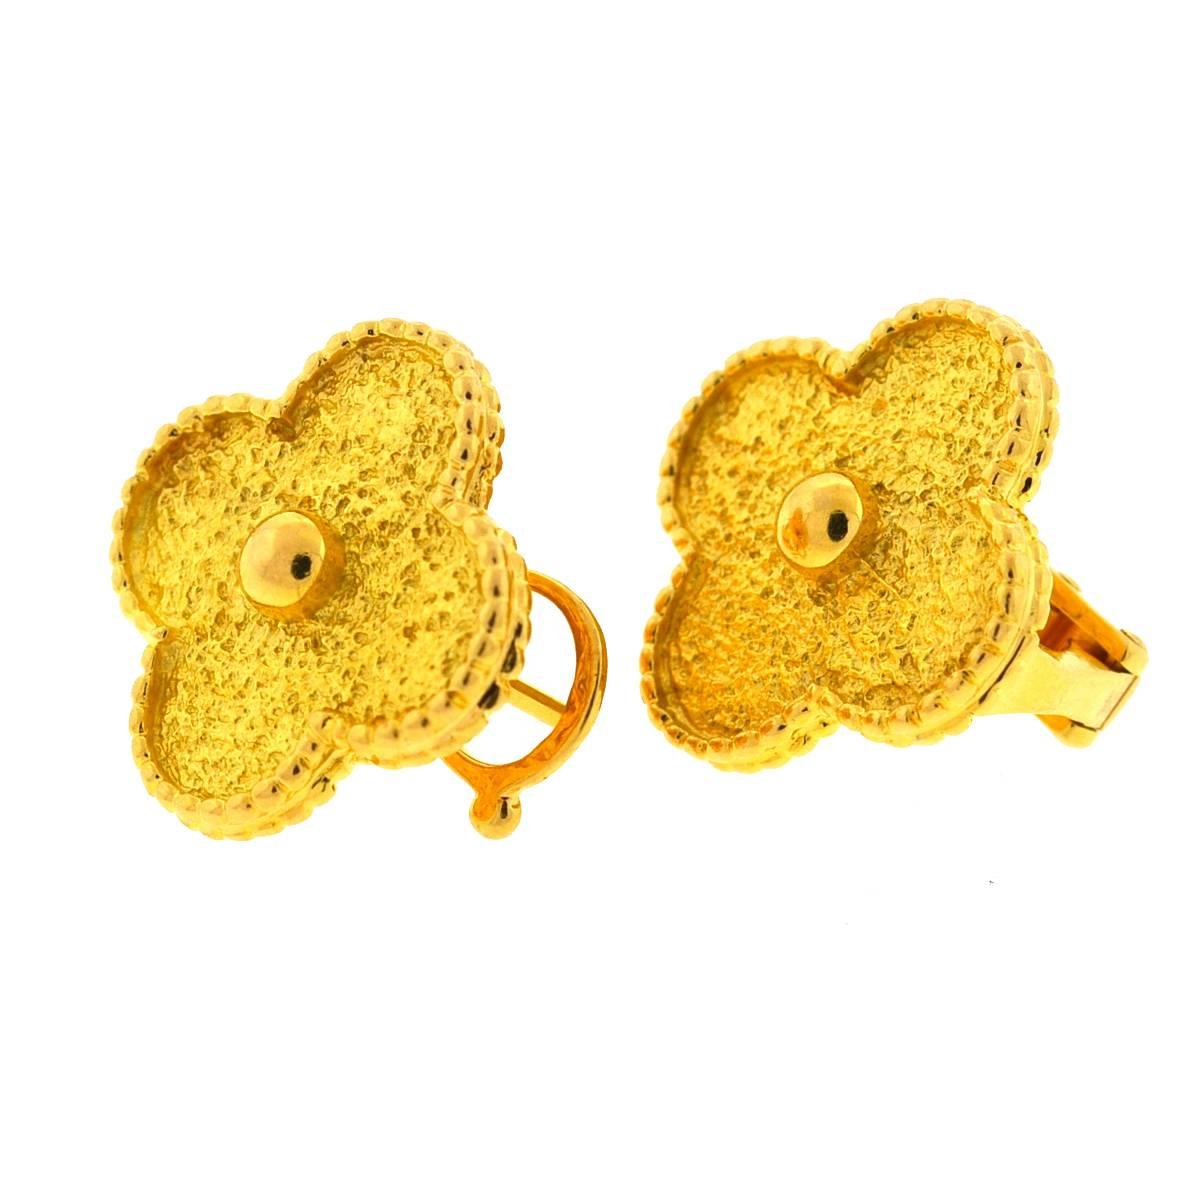 18 karat gold stud earrings